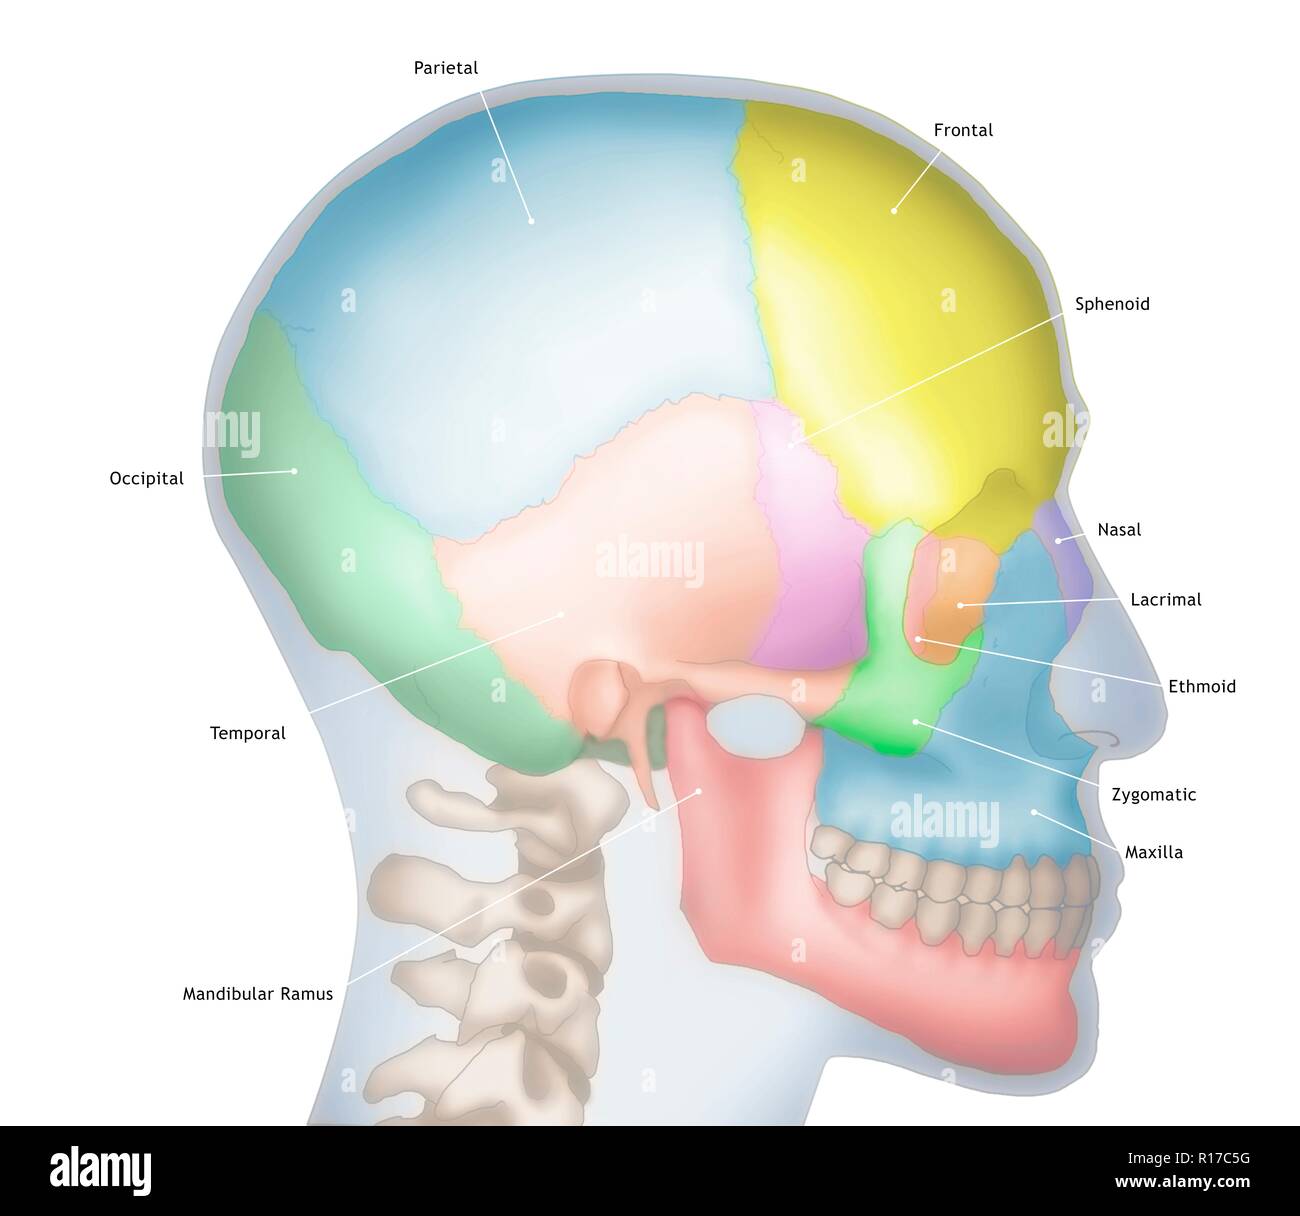 Abbildung eines menschlichen Schädels zeigt die Umrisse des Kopfes in Blau. Die verschiedenen Knochen des Schädels sind auch in unterschiedlichen Farben dargestellt, einschließlich der frontale (Gelb), Parietalen (blau), Okzipitalen (dunkelgrün), Temporal (orange) und Nase (lila). Stockfoto